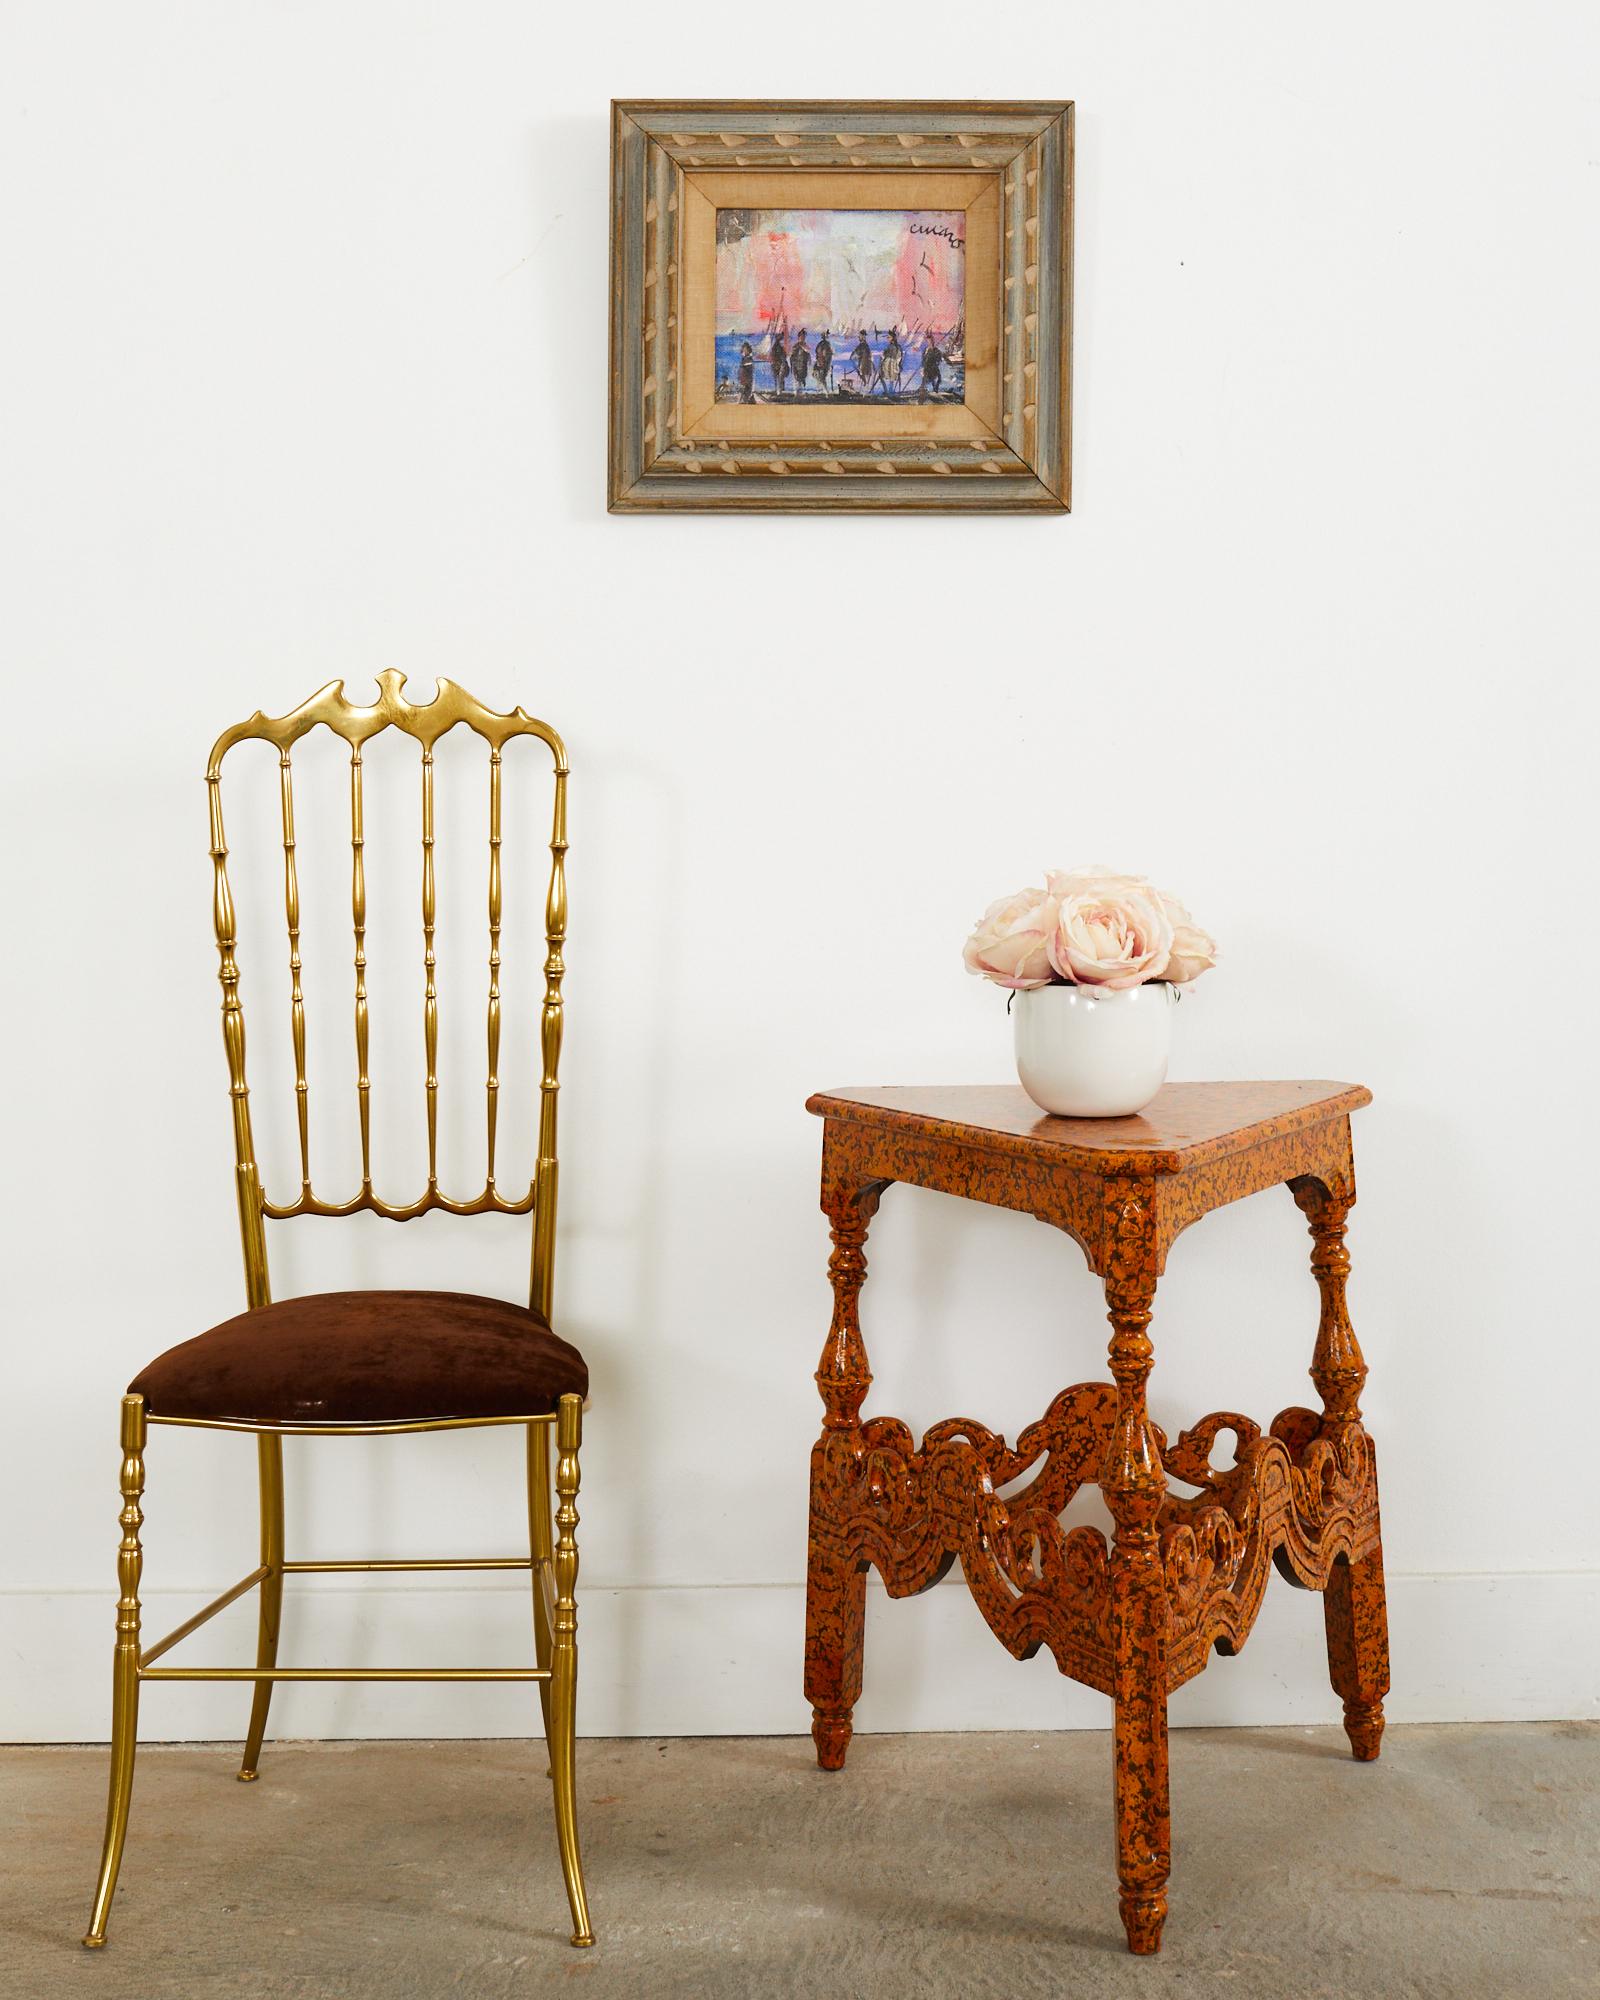 Atemberaubende Land Englisch viktorianischen Grille Tisch Lack gesprenkelt von Künstler Ira Yeager (American 1938-2022). Gefertigt aus Mahagoni mit gedrechselten Beinen, die durch große geschwungene Bänder verbunden sind. Der einzigartige Tisch oder